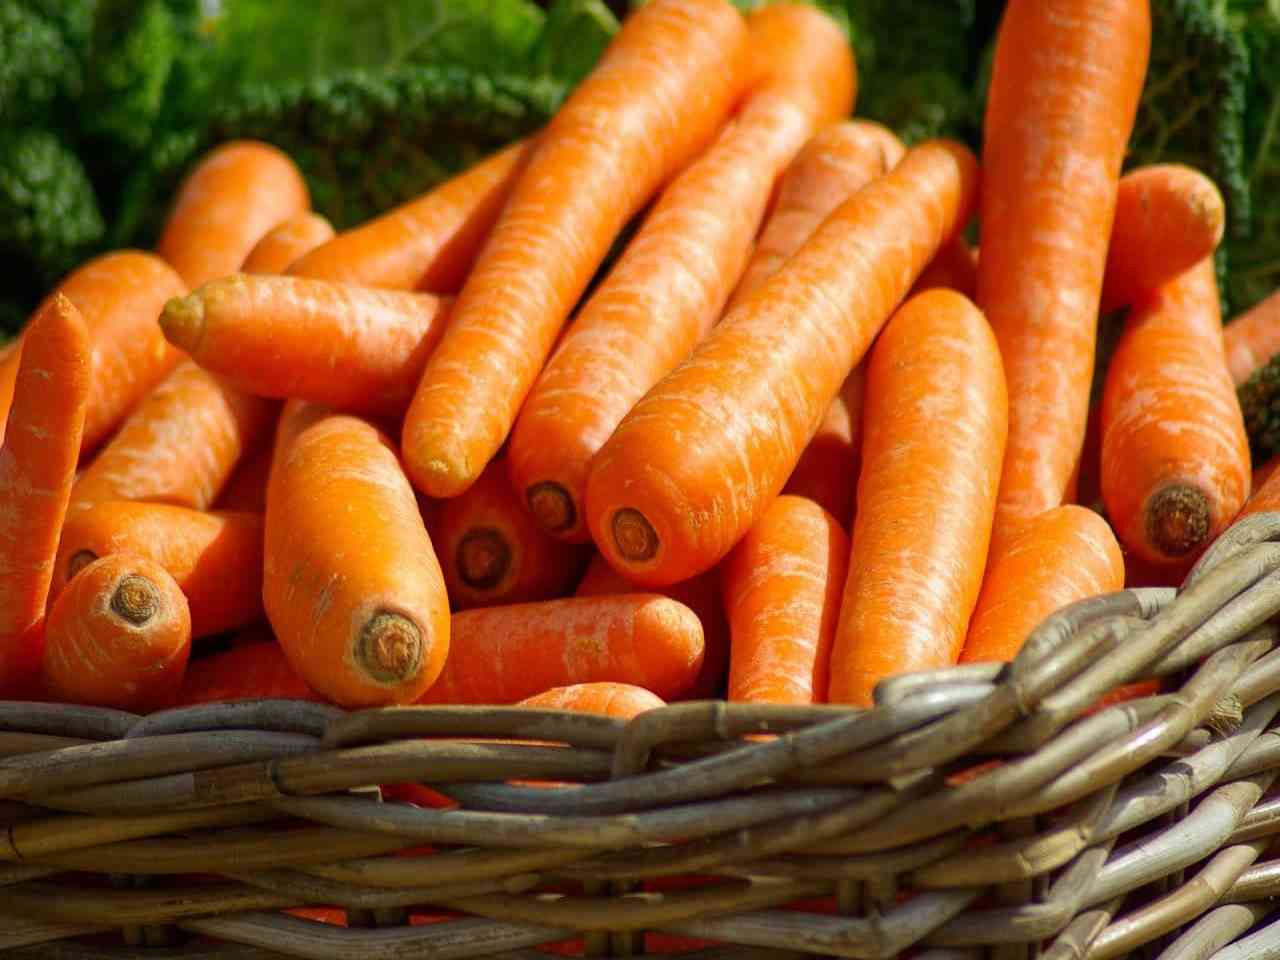 Piantare carote in bottiglia: ecco il trucco per averle sempre fresche